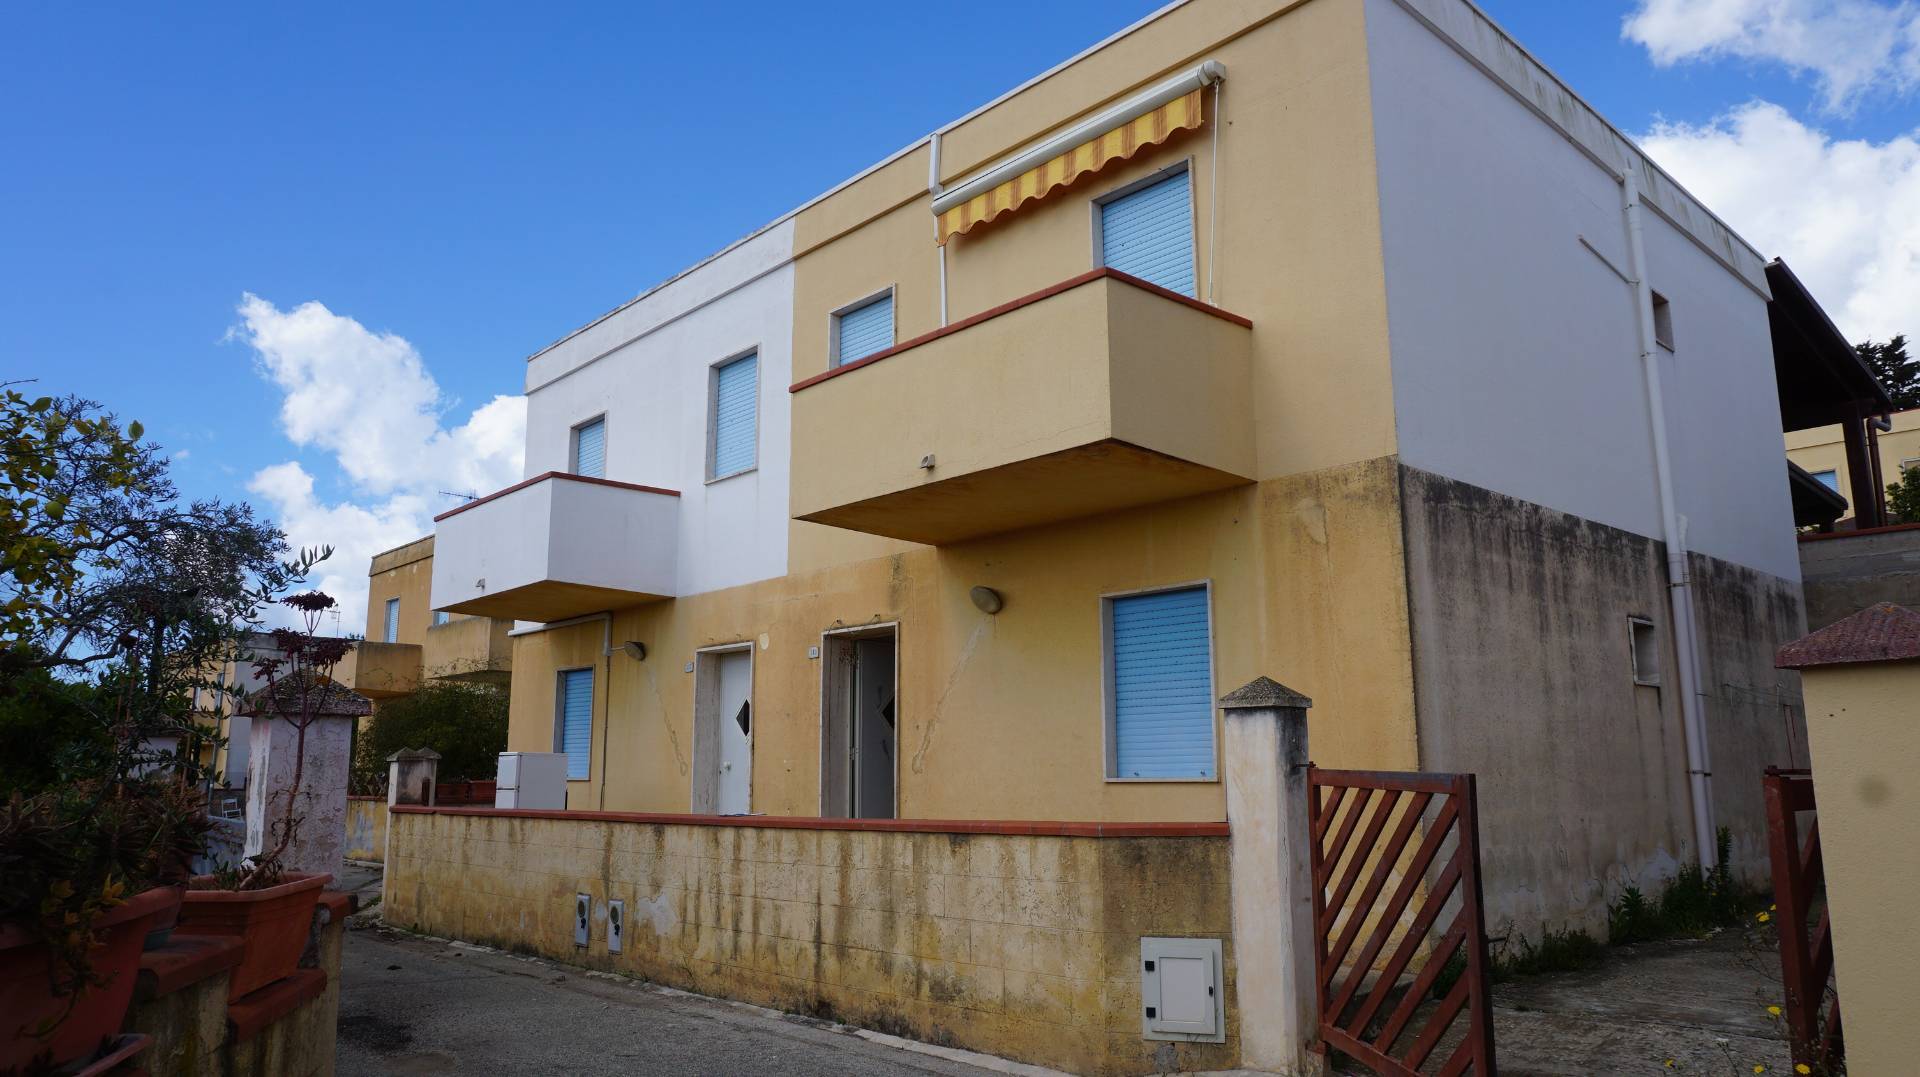 Appartamento in vendita a Castelvetrano, 3 locali, zona Località: MarinelladiSelinunte, prezzo € 45.000 | PortaleAgenzieImmobiliari.it